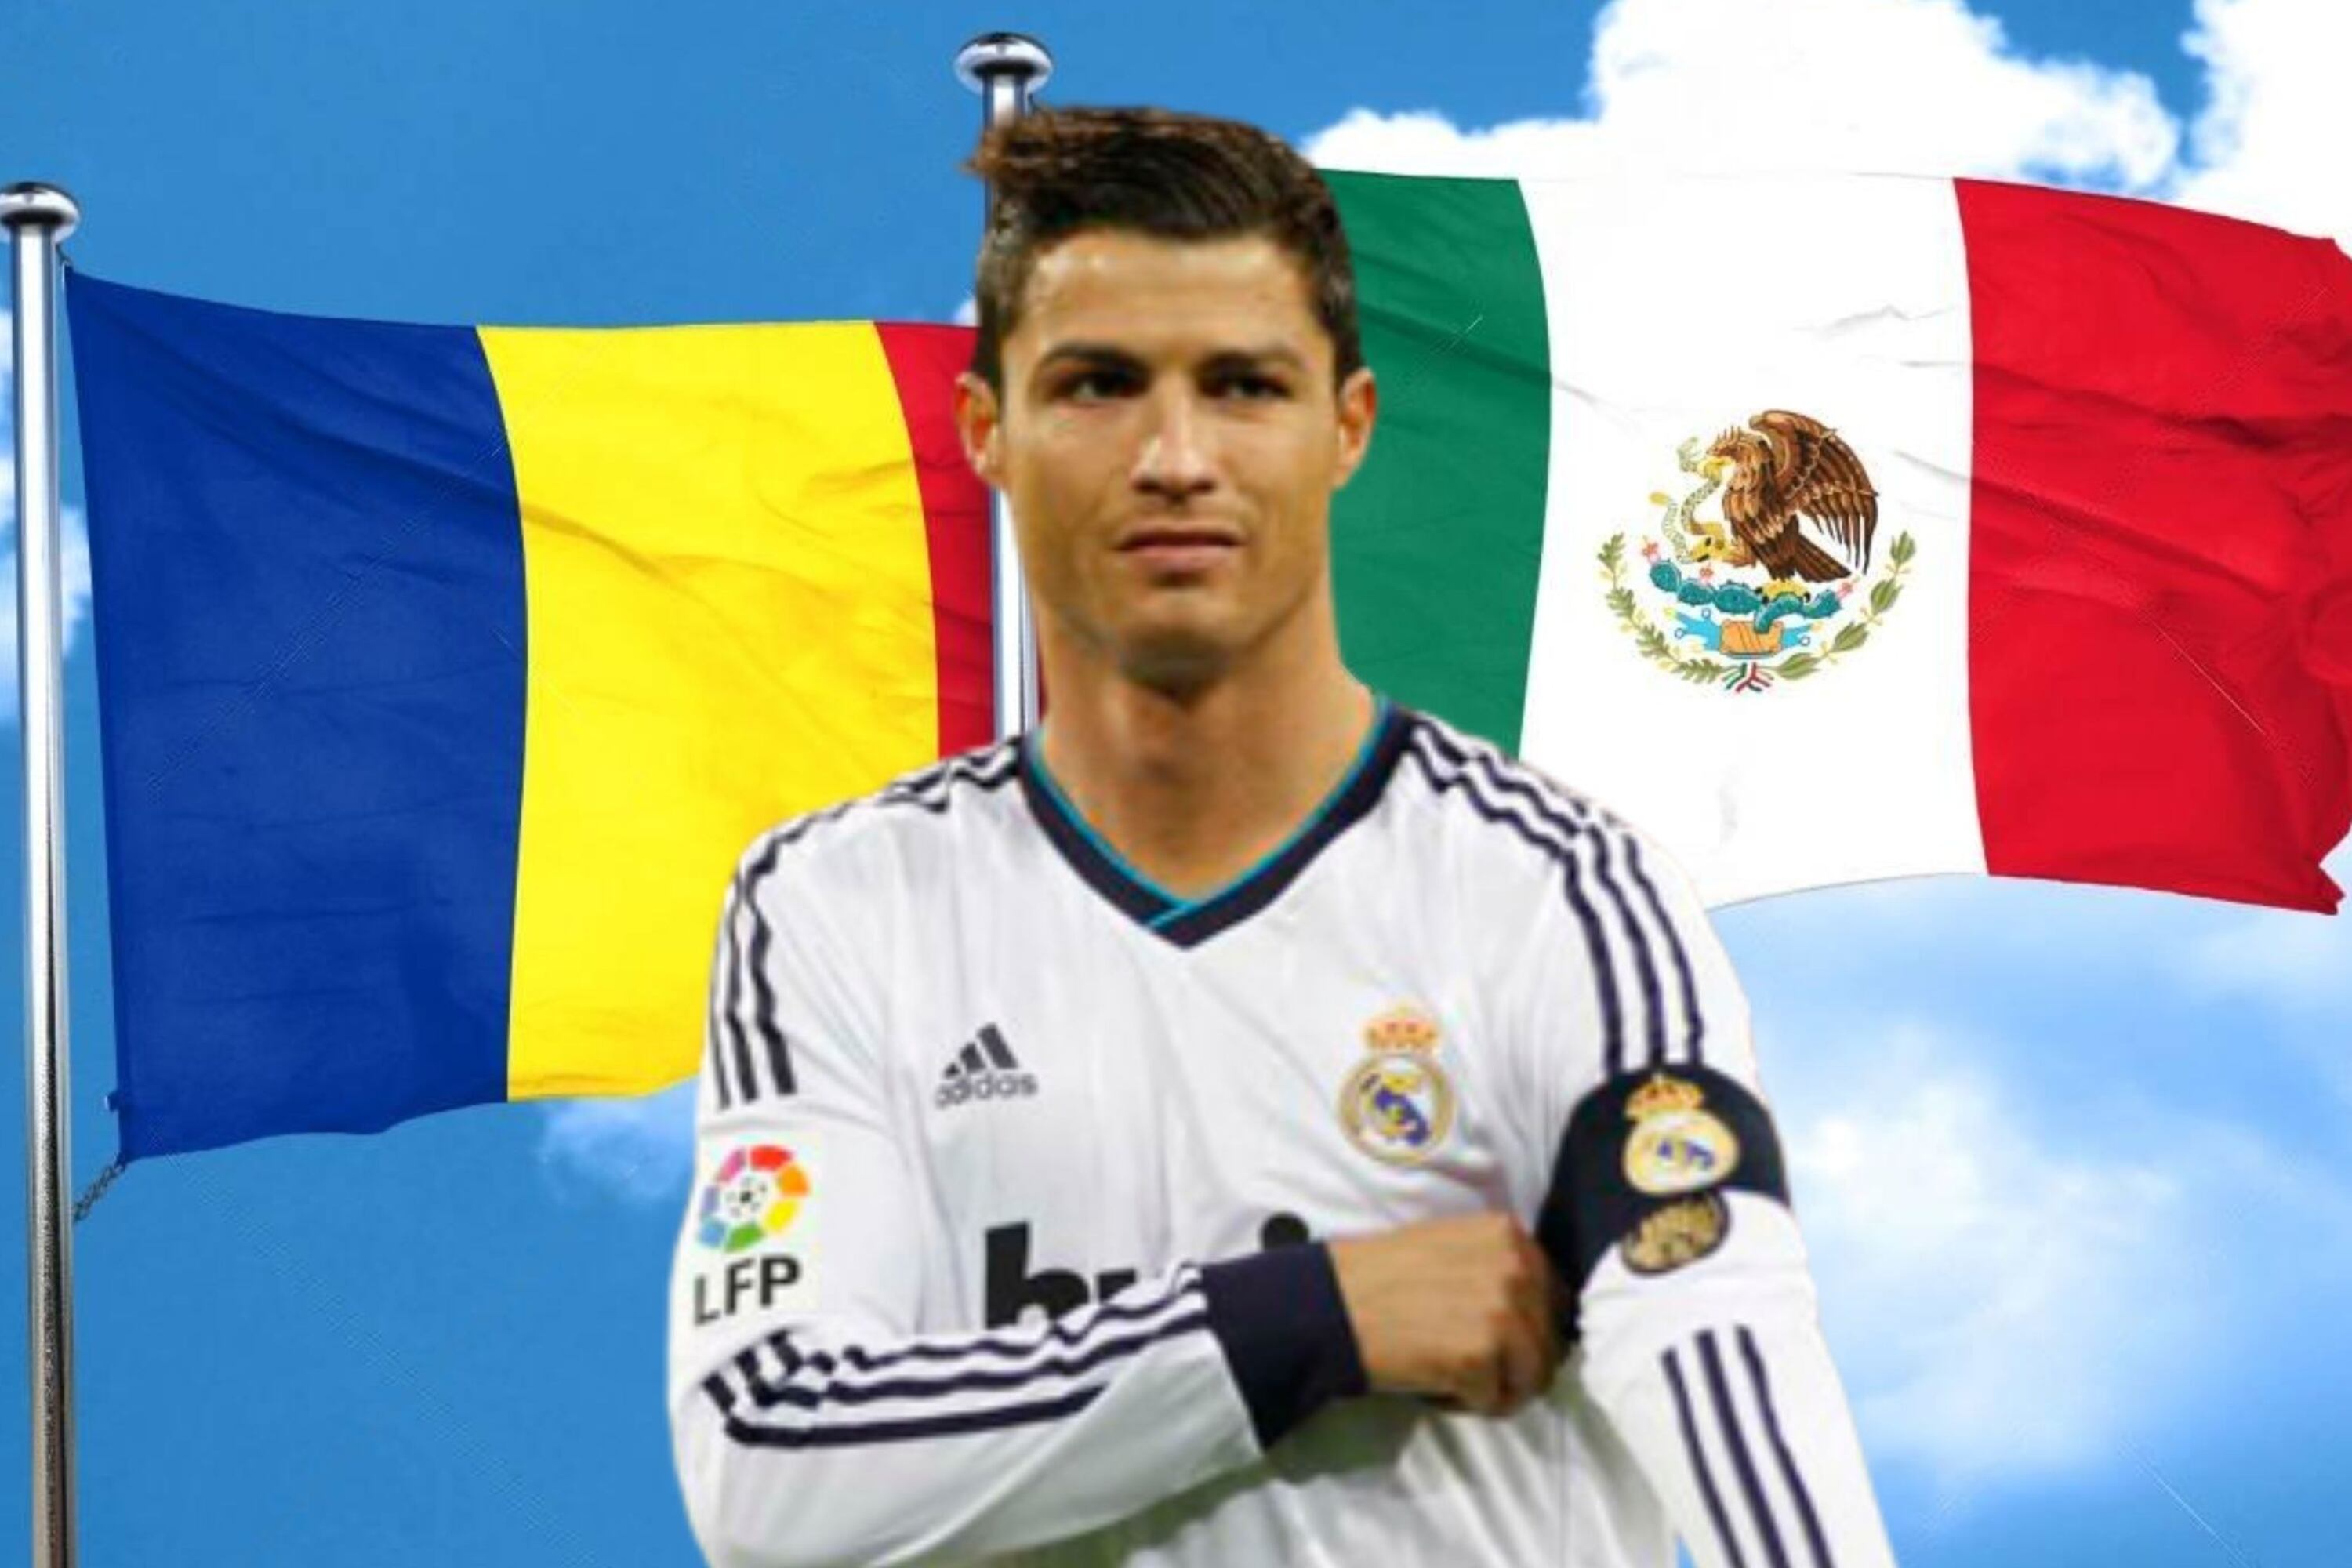 El jugador mexicano que fue capitán del Real Madrid y ahora juega en Rumania